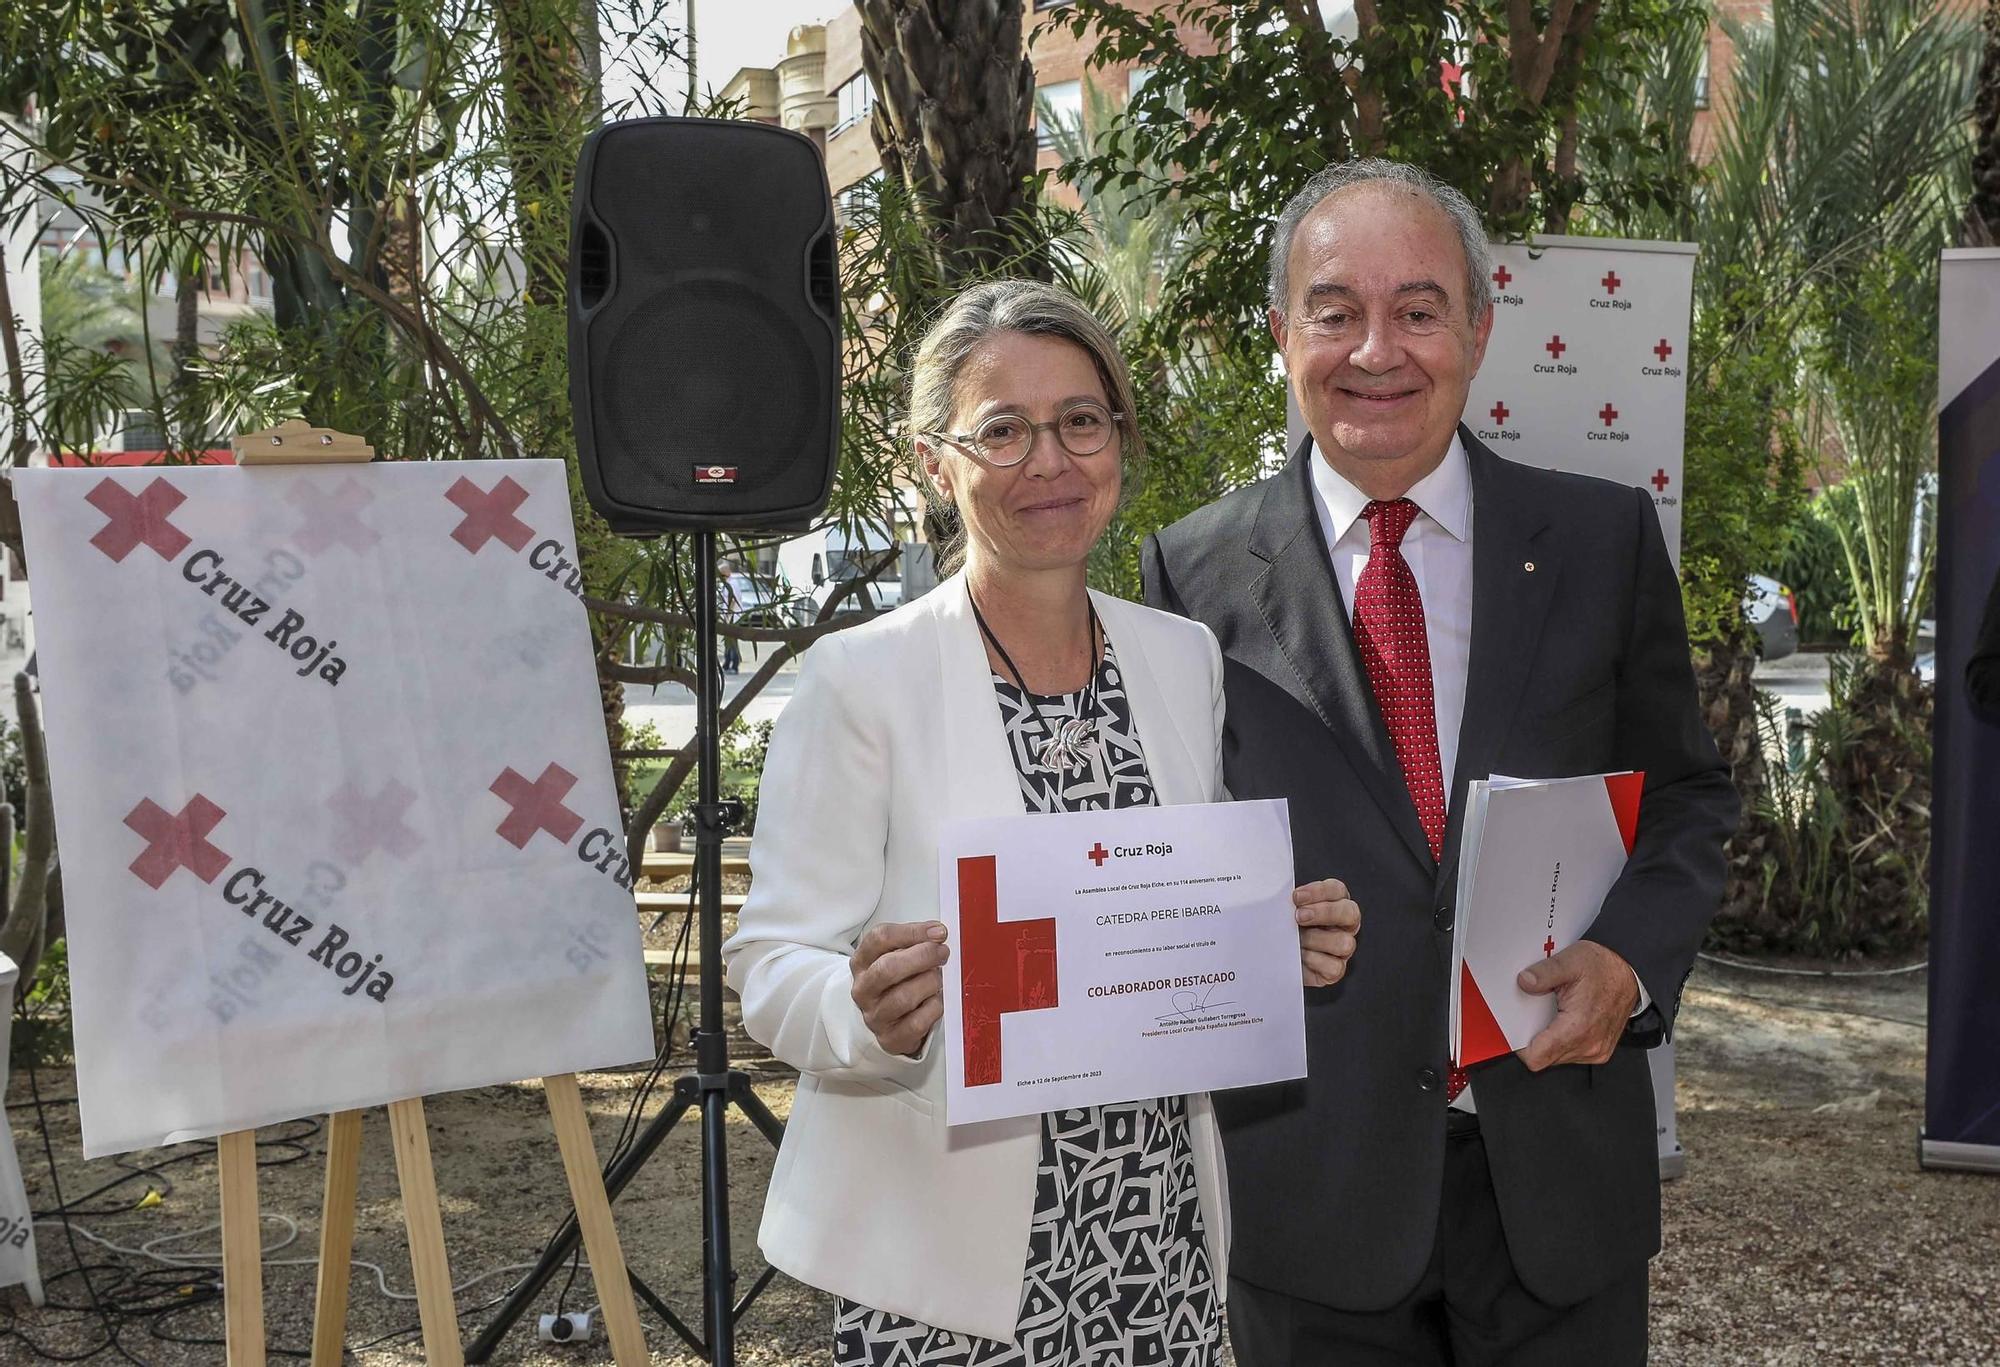 Cruz Roja cumple en Elche 114 años